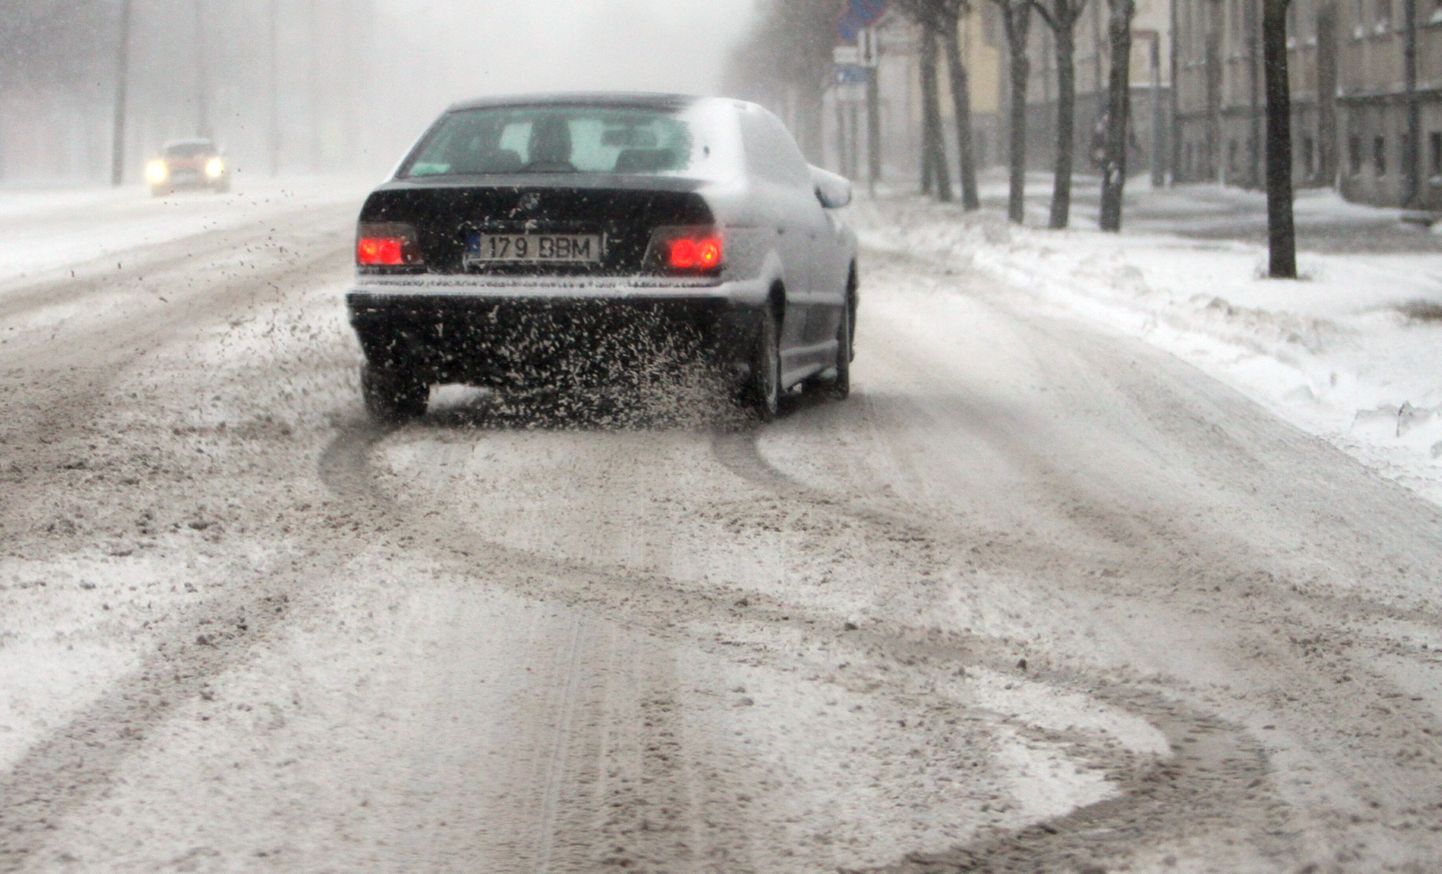 Ilmateenistus andis tänaseks kogu Eestile tugevneva tuule, lume- ja lörtsisaju ja keeruliseks muutuvate liiklusolude tõttu hoiatuse. Foto on illustreeriv.